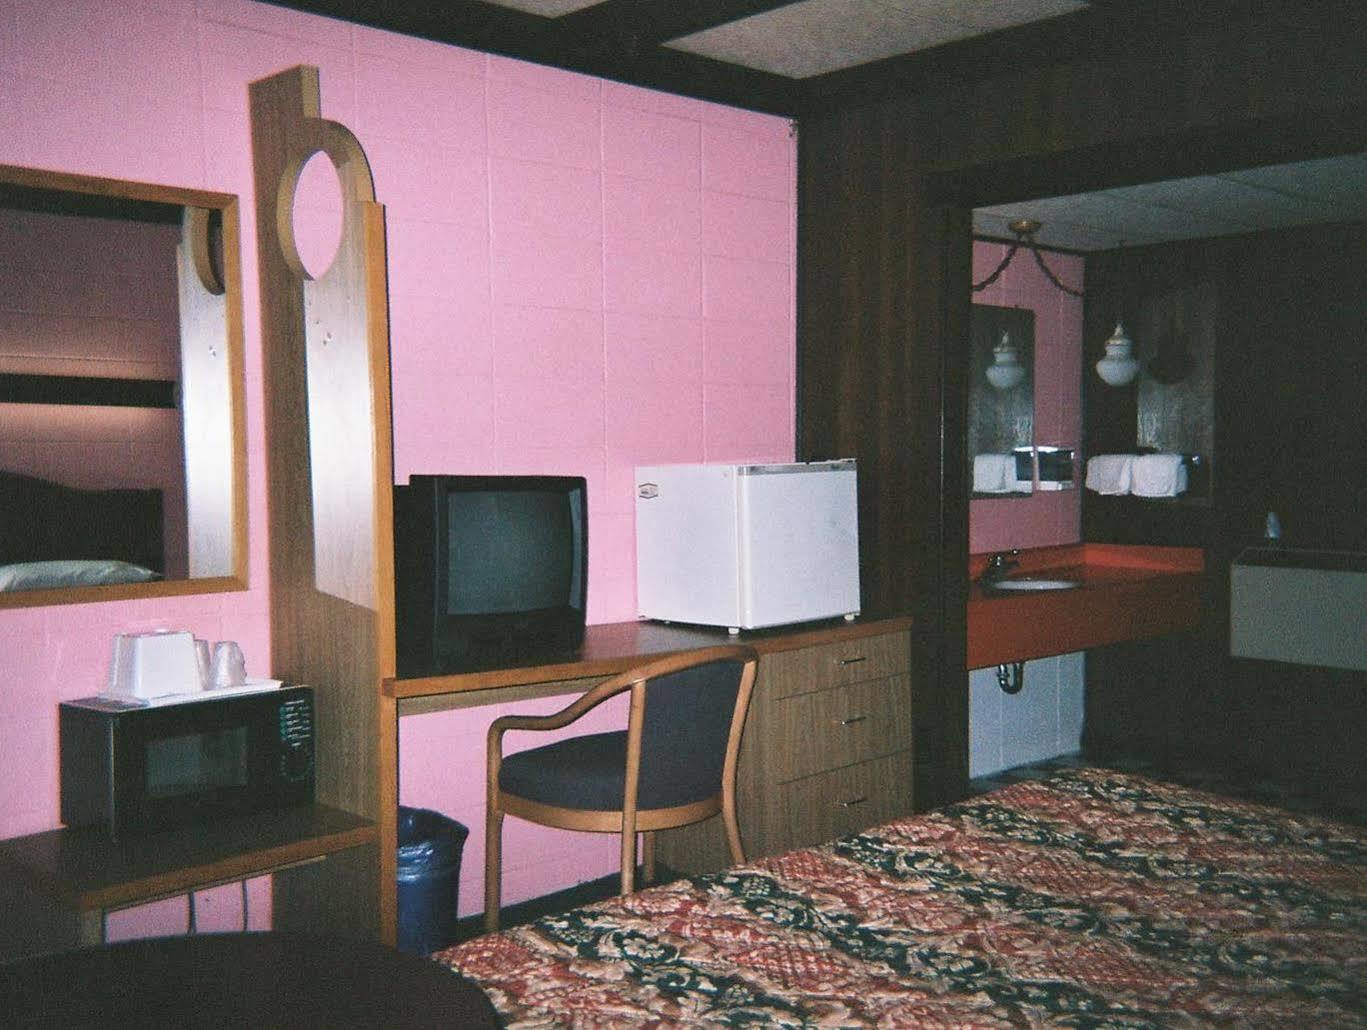 Motel Reedsburg Zewnętrze zdjęcie